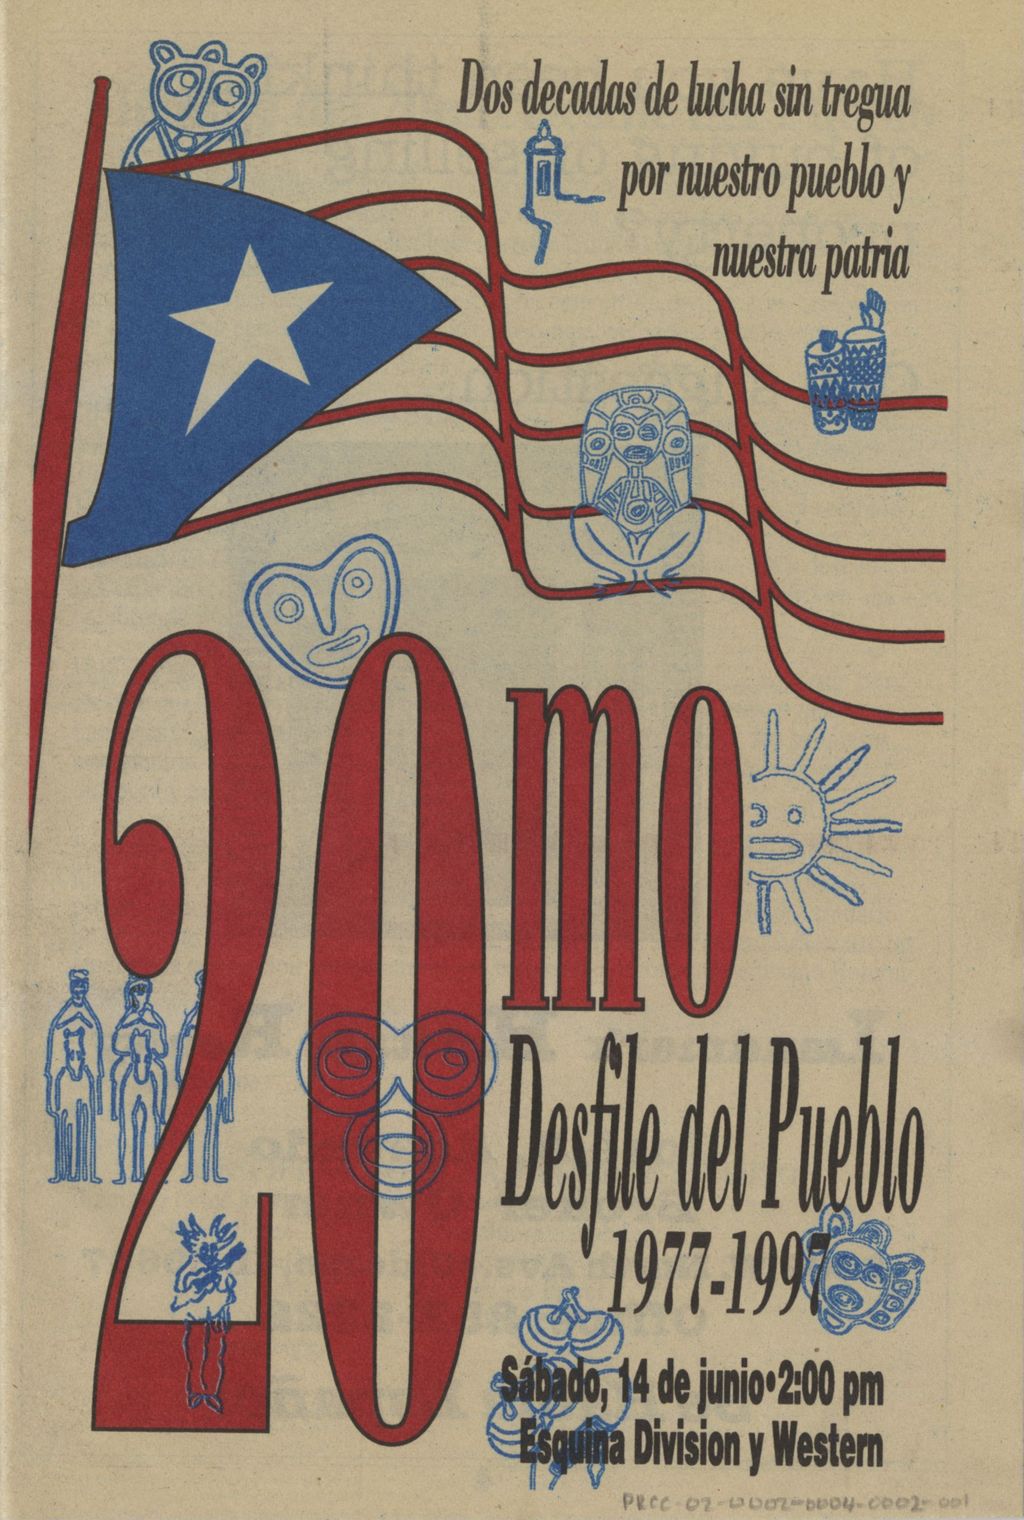 Miniature of 20mo Desfile del Pueblo